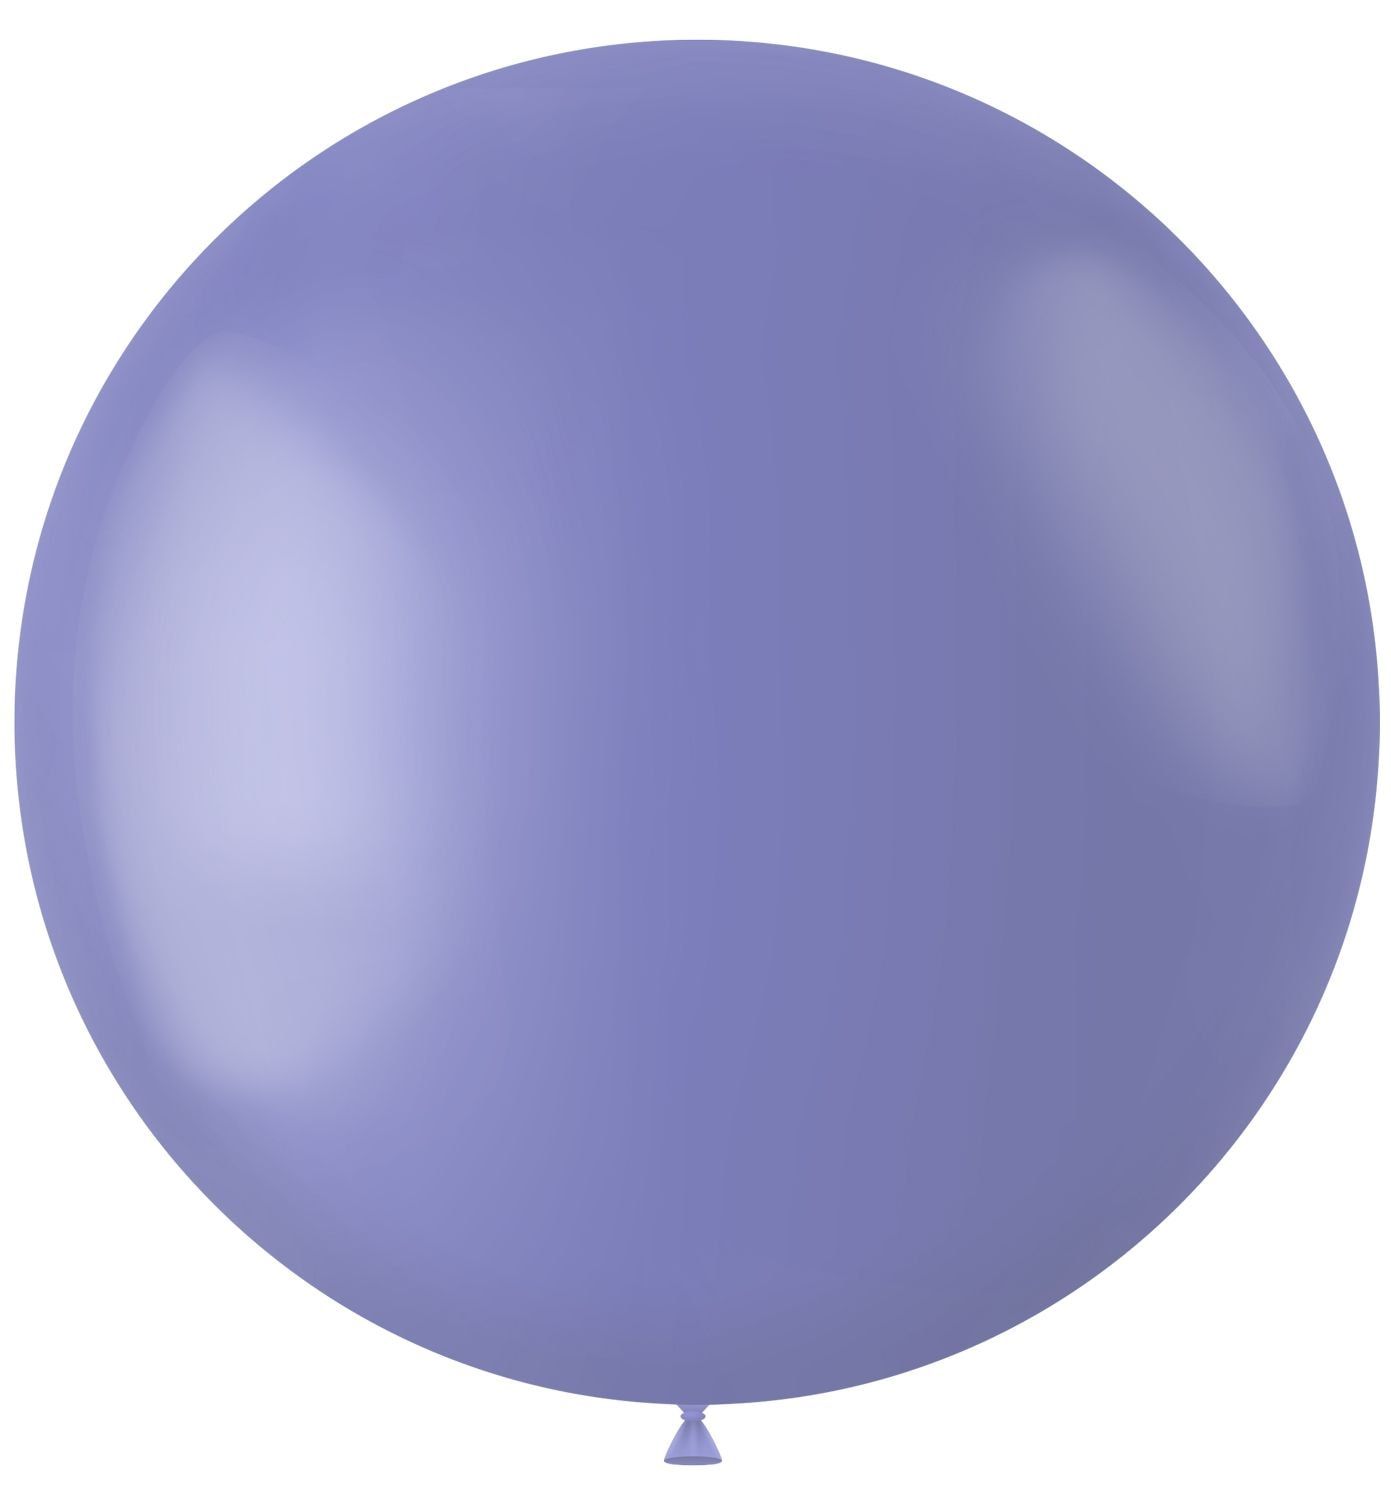 Blauwe ballon matte kleur